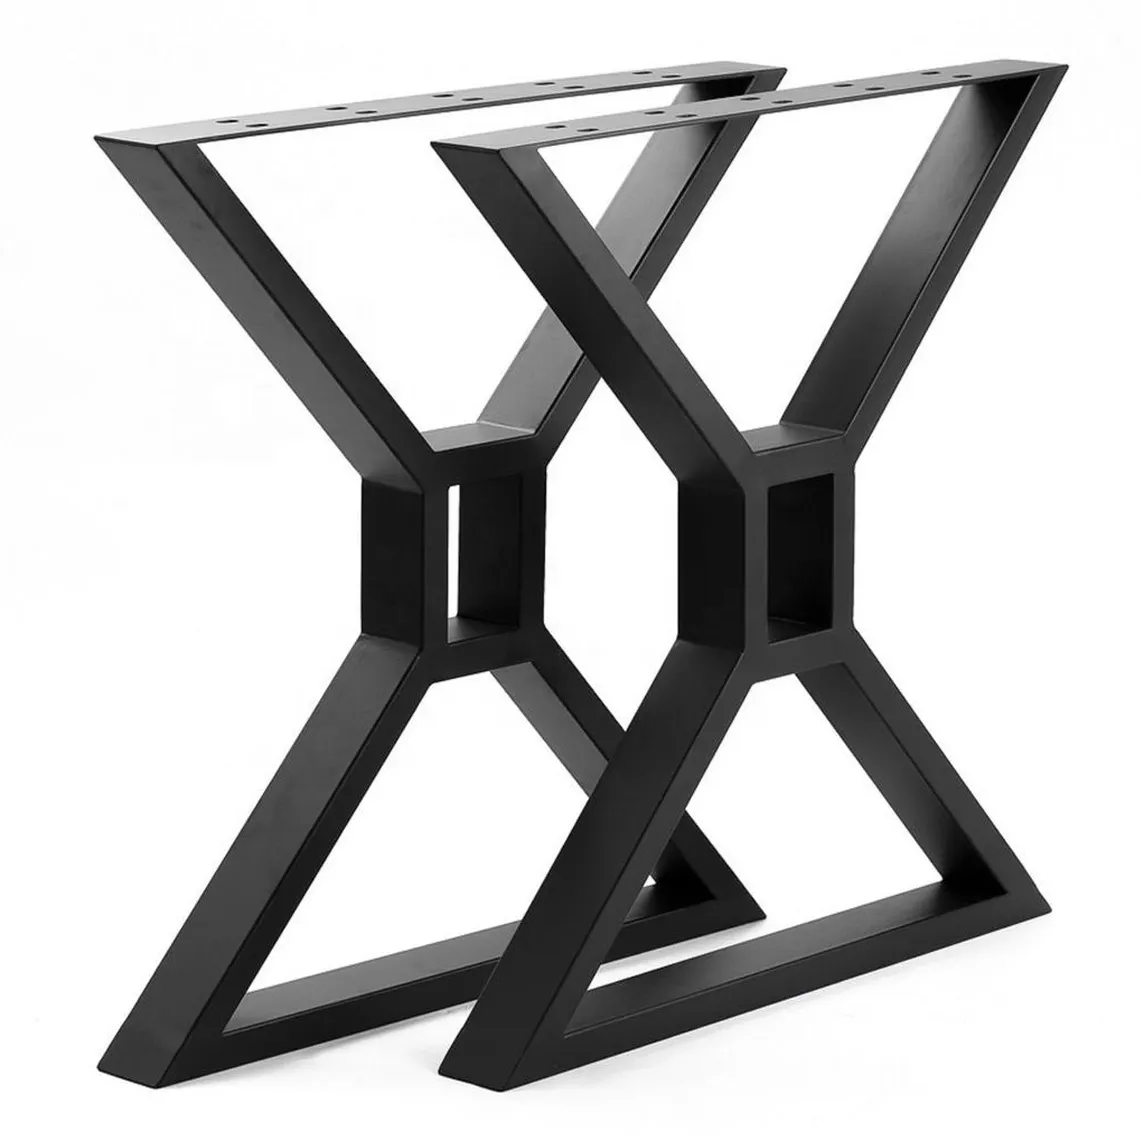 ขายส่งอุปกรณ์เฟอร์นิเจอร์เหล็กหล่อหนัก X รูปร่างอุตสาหกรรมขาโลหะฐานโต๊ะสำหรับโต๊ะกาแฟรับประทานอาหาร